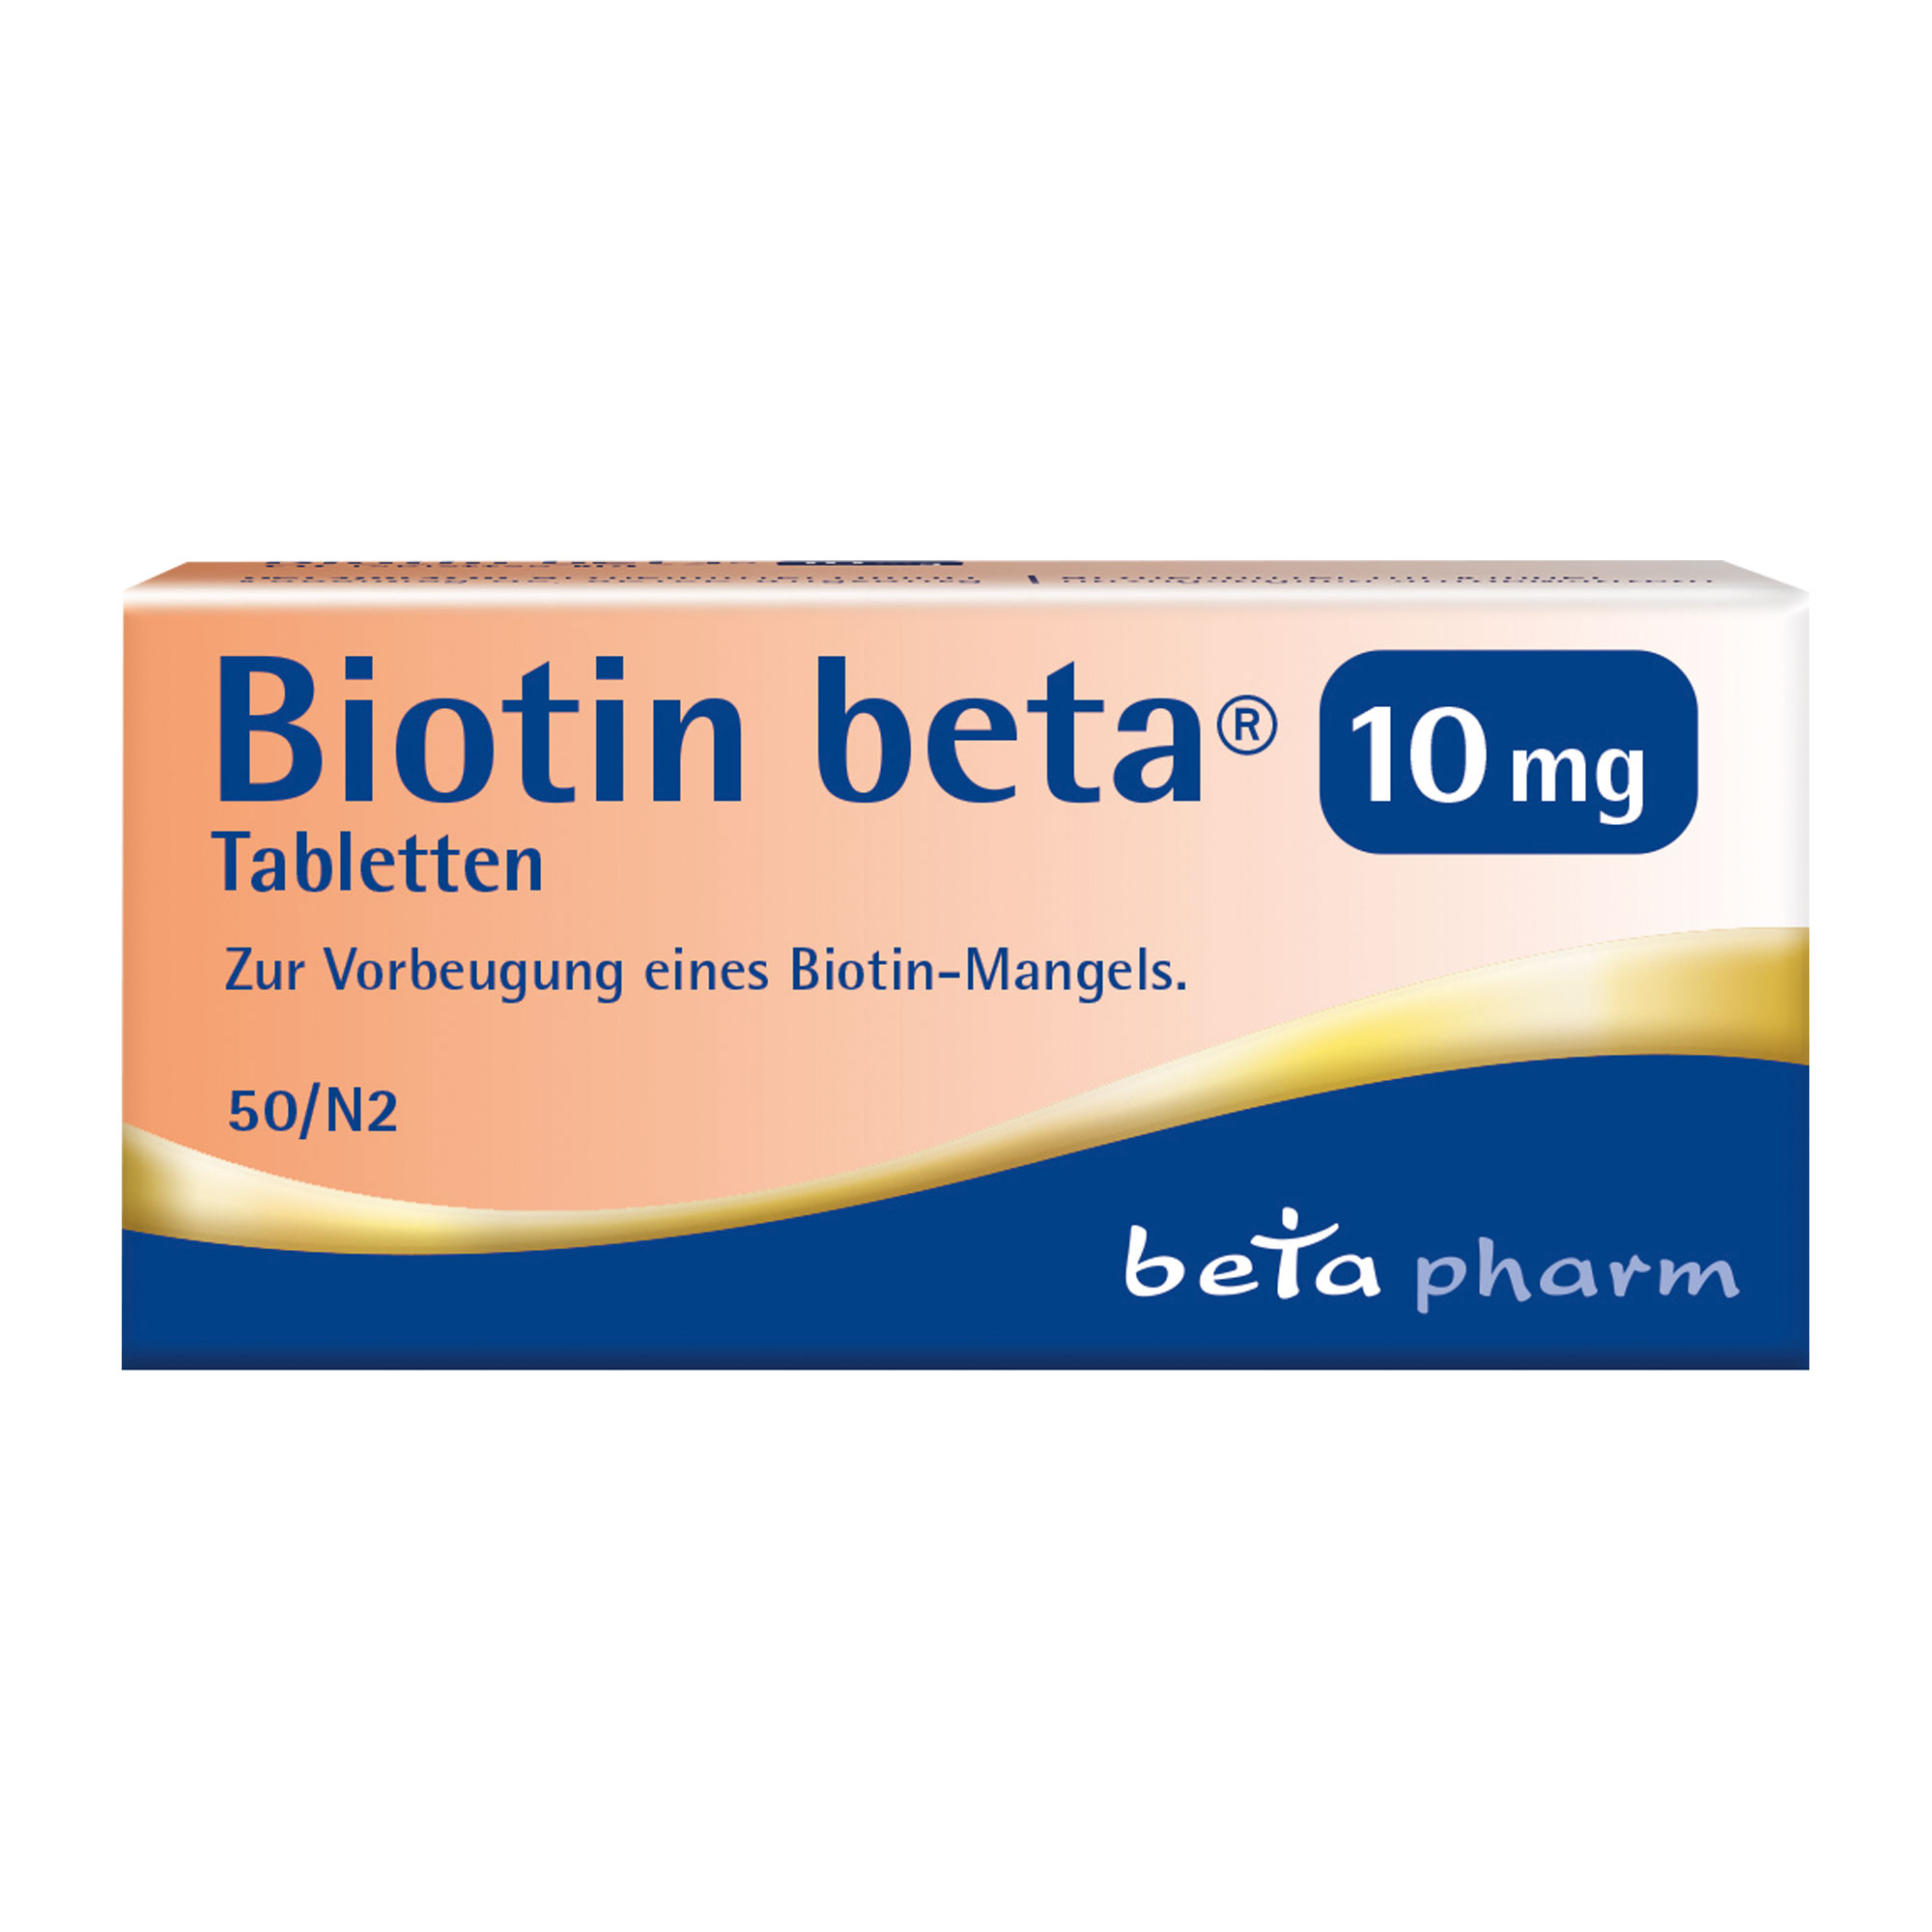 Vitaminpräparat zur Vorbeugung eines Biotin-Mangels.